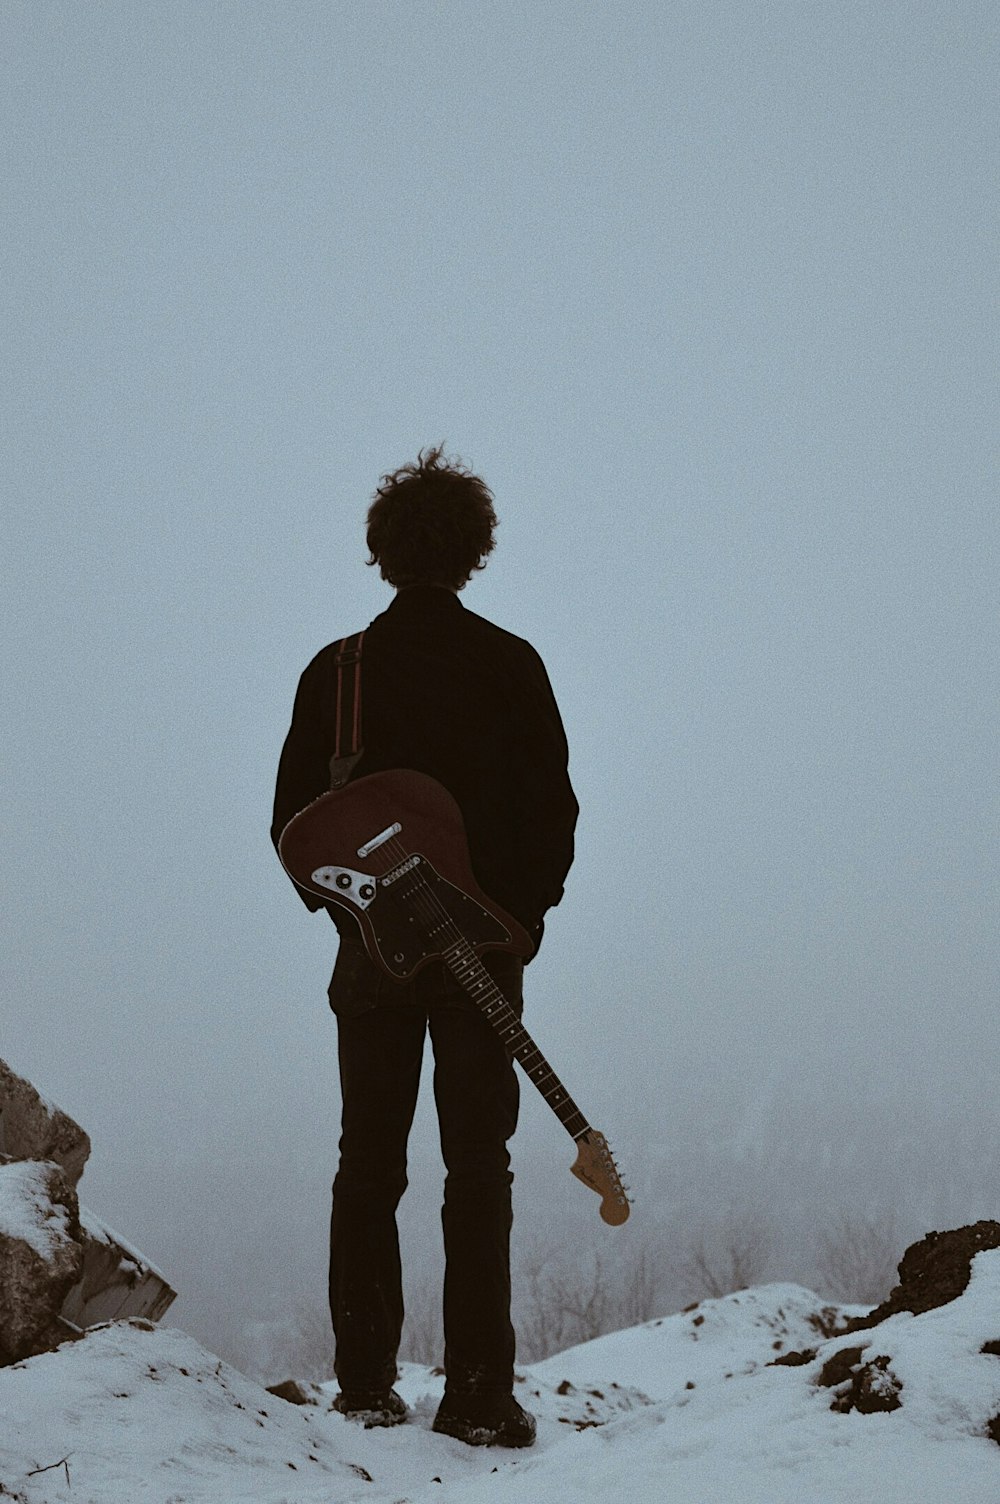 崖の上に立つギターを背負った男